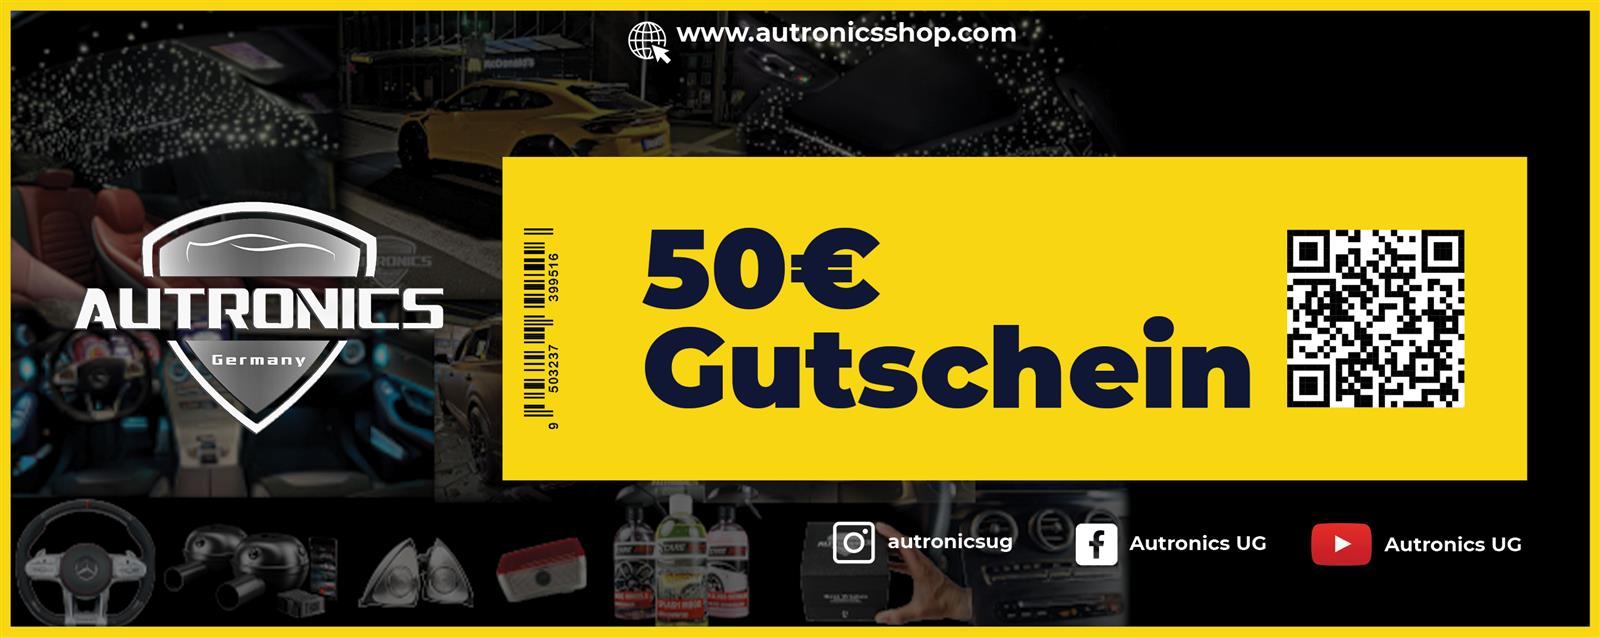 50EUR-Gutschein-Anwendbar-f-r-alle-Autronics-Inhouse-Dienstleistungsprodukte-Nachr-stungen-01